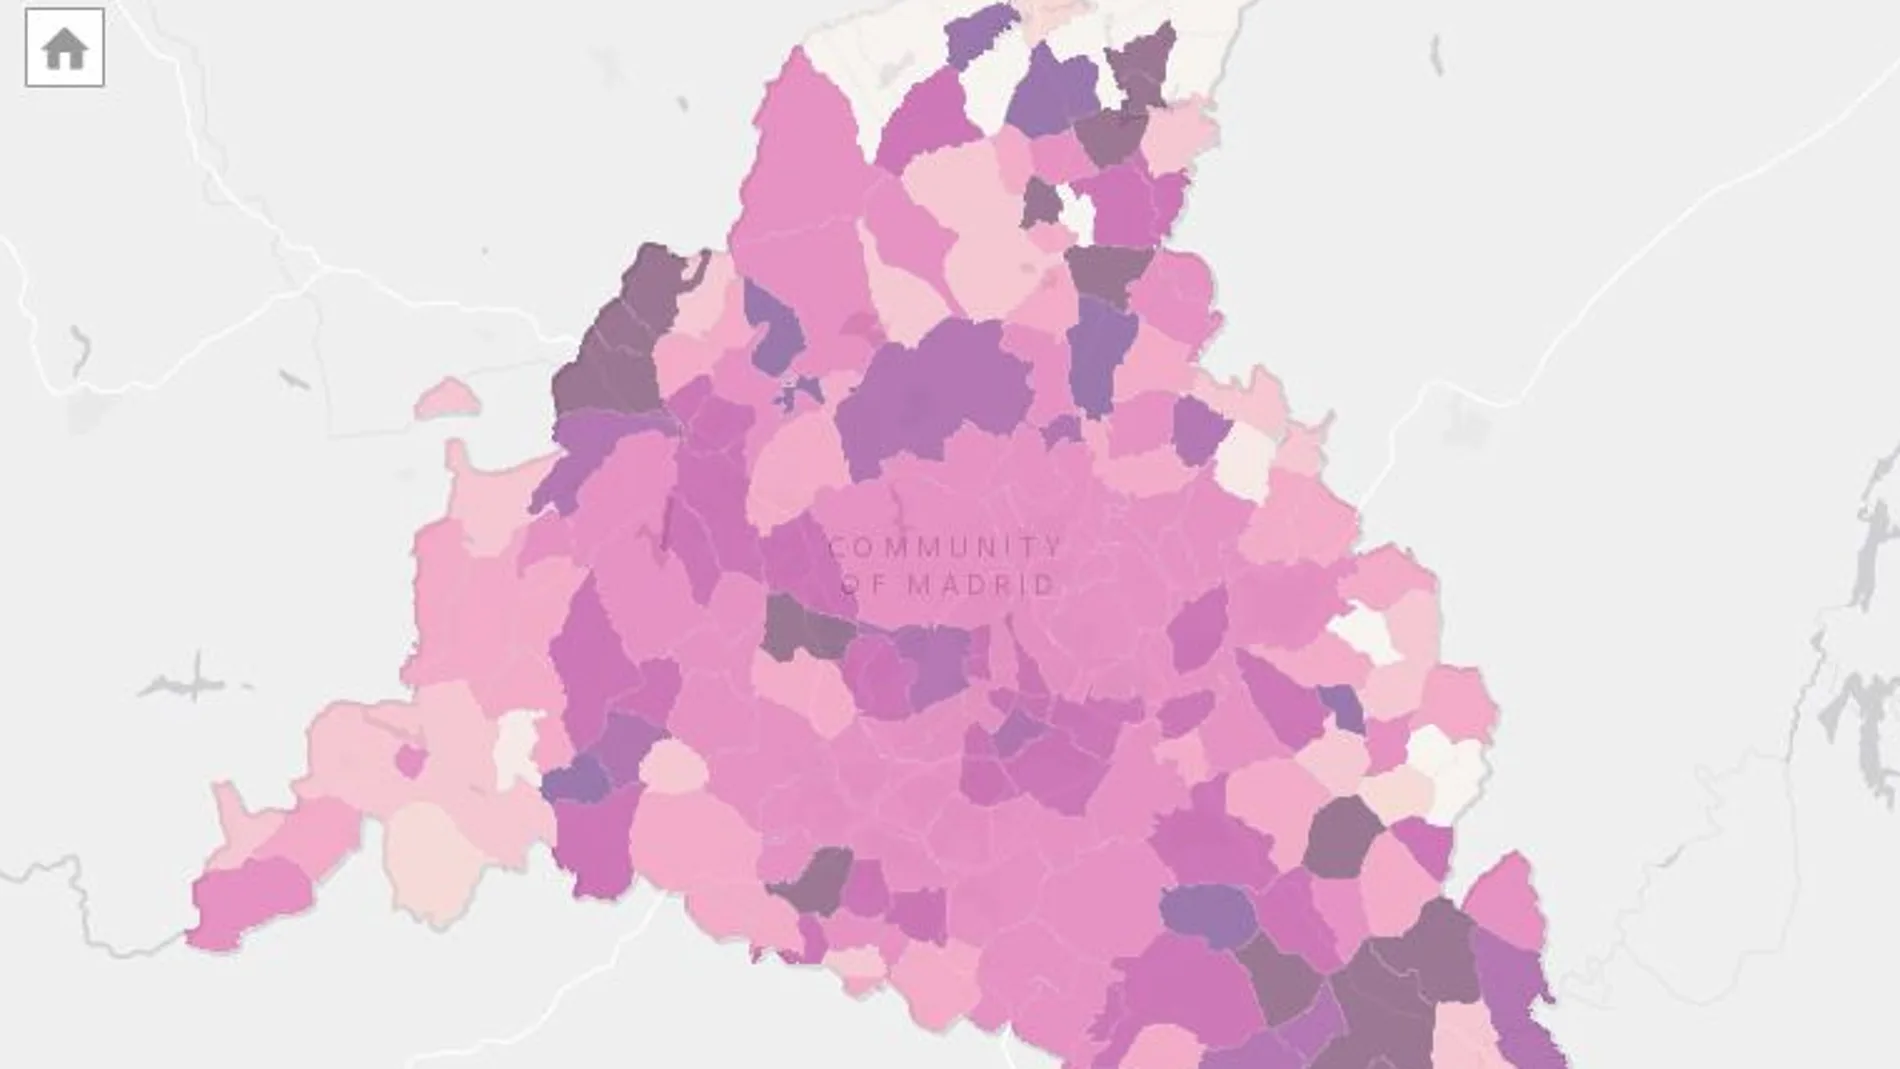 Mapa de la Comunidad de Madrid dividido en las zonas básicas de salud